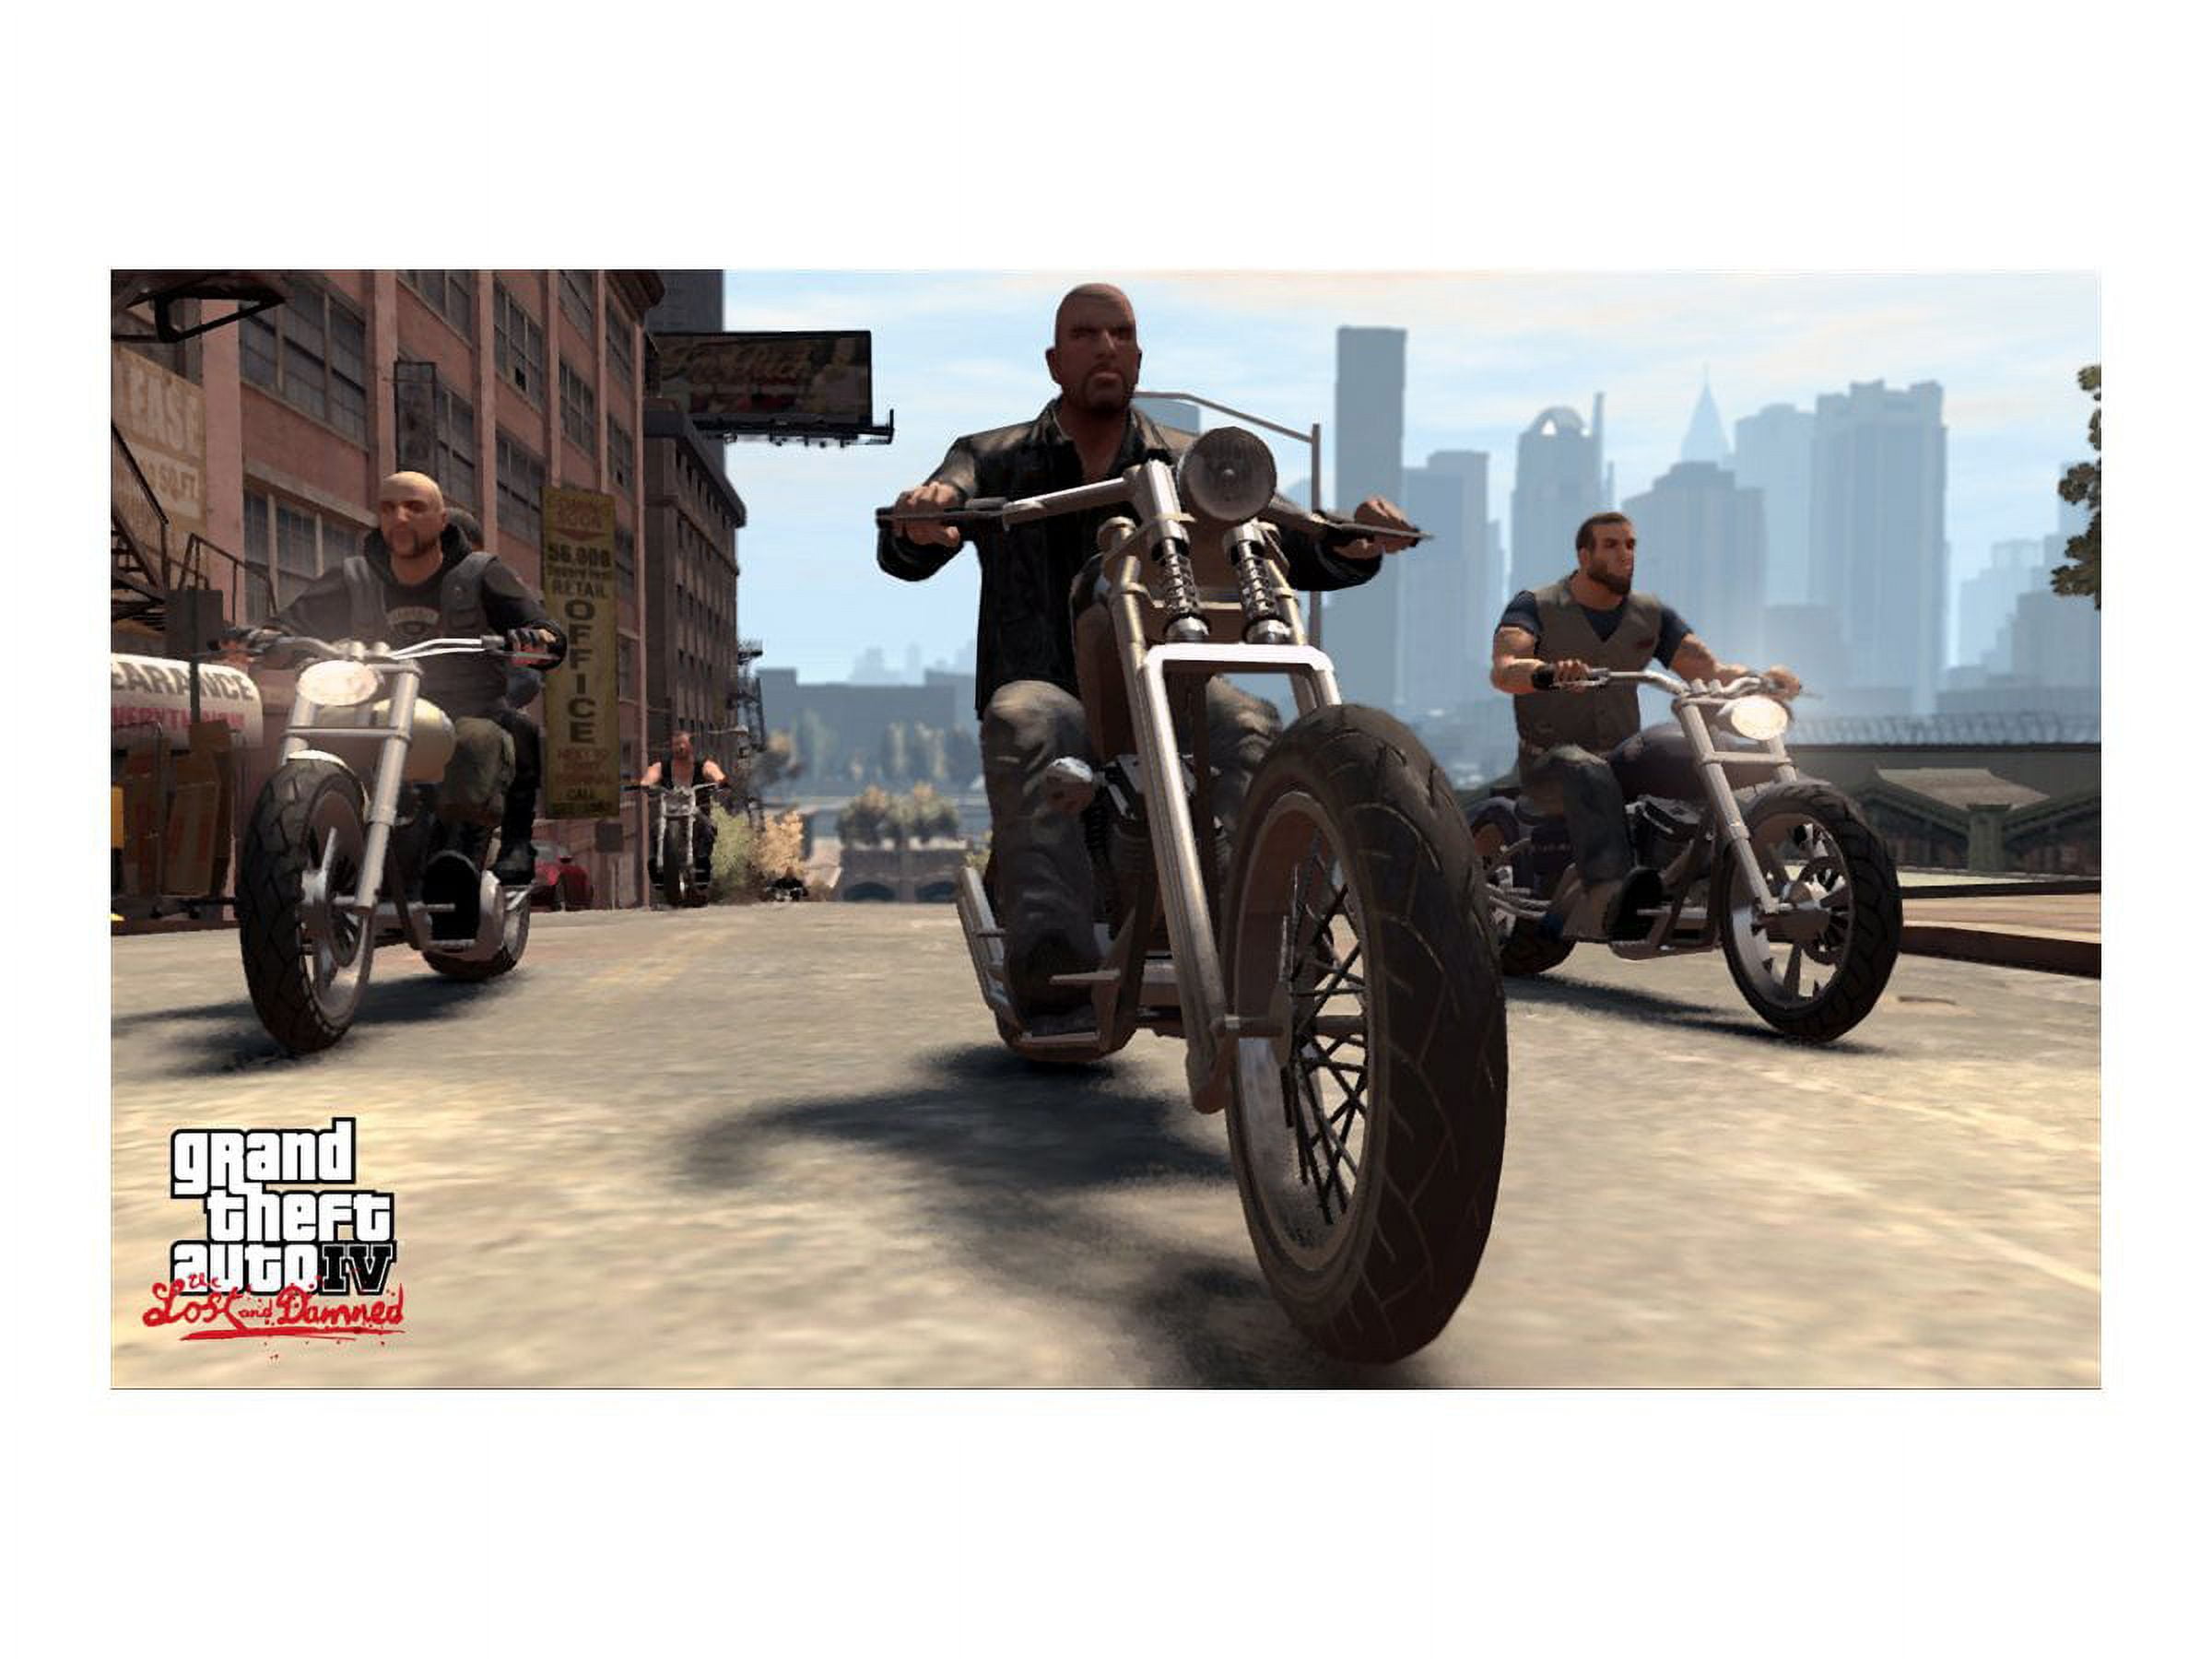 Game - Grand Theft Auto: Episodes from Liberty City - Xbox 360 em Promoção  na Americanas